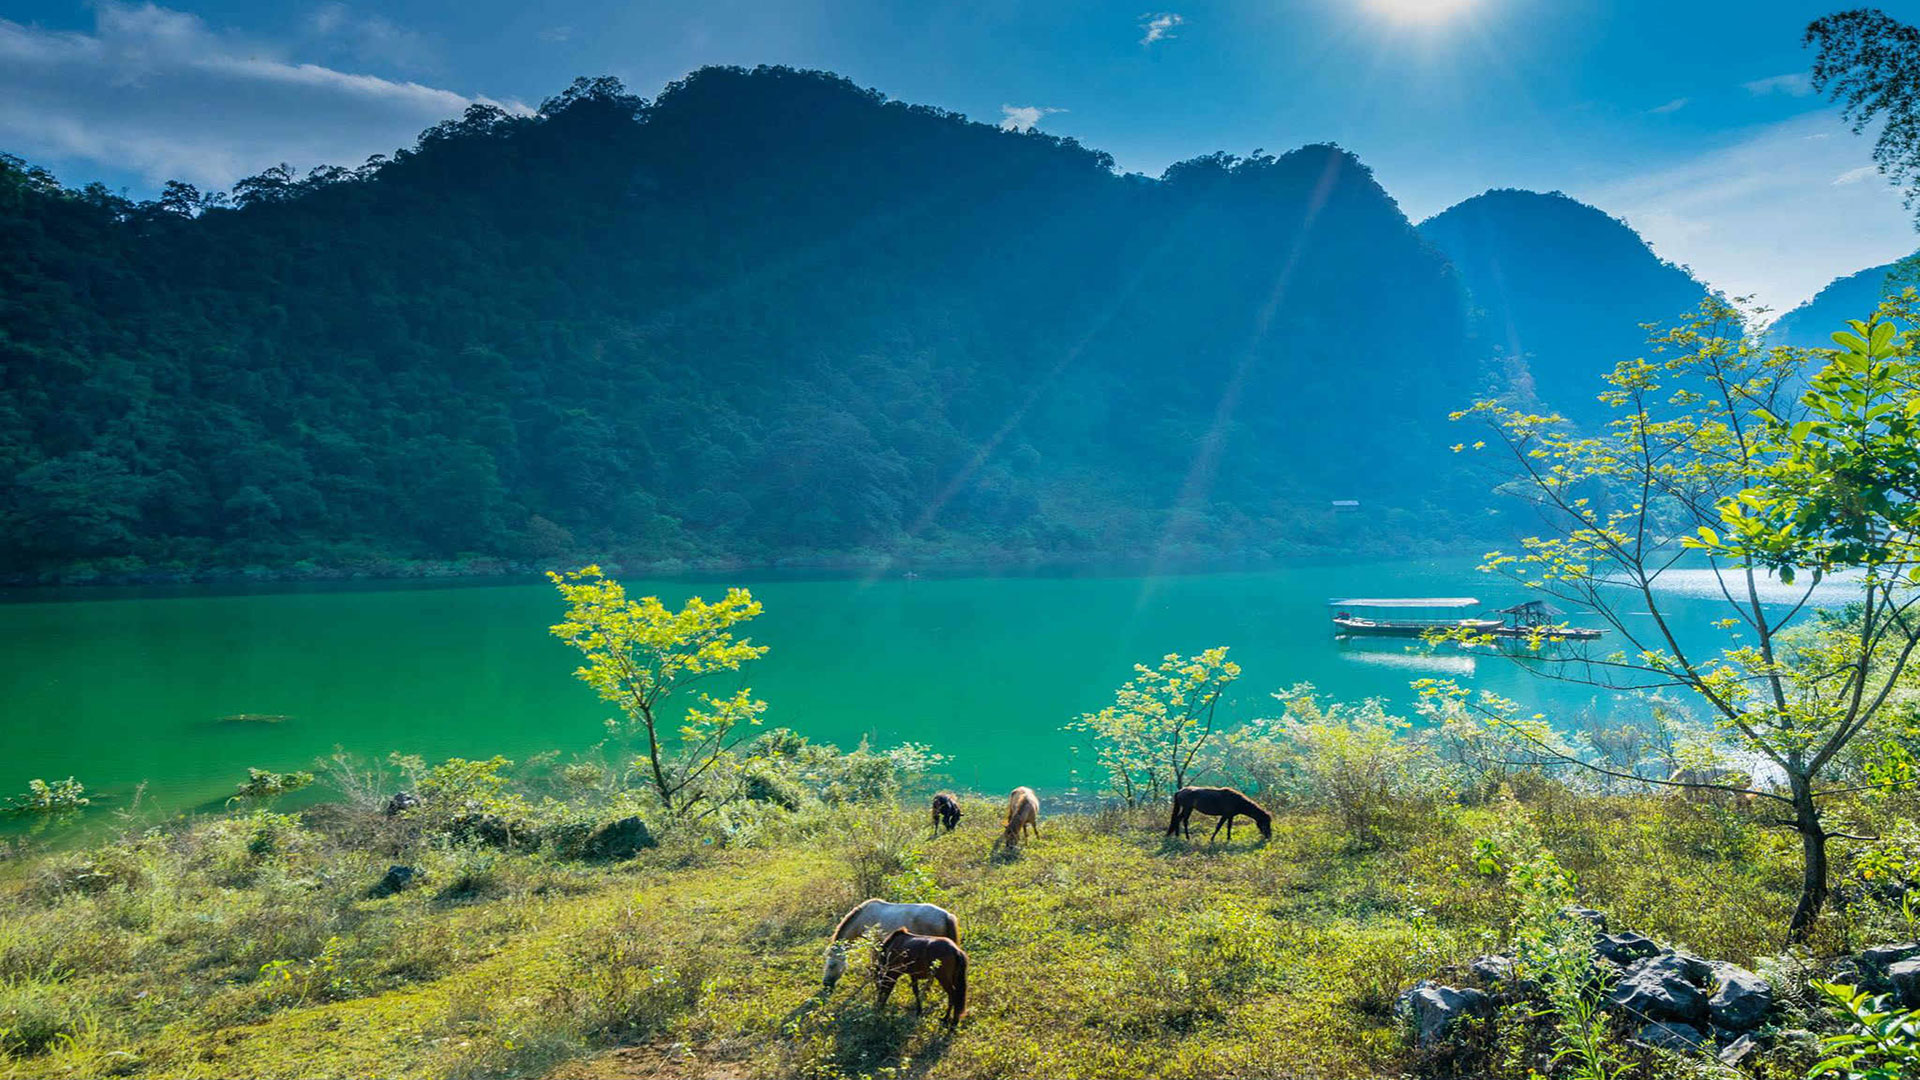 Hòa mình vào phong cảnh thiên nhiên cùng 7 vườn quốc gia đẹp nhất Việt Nam